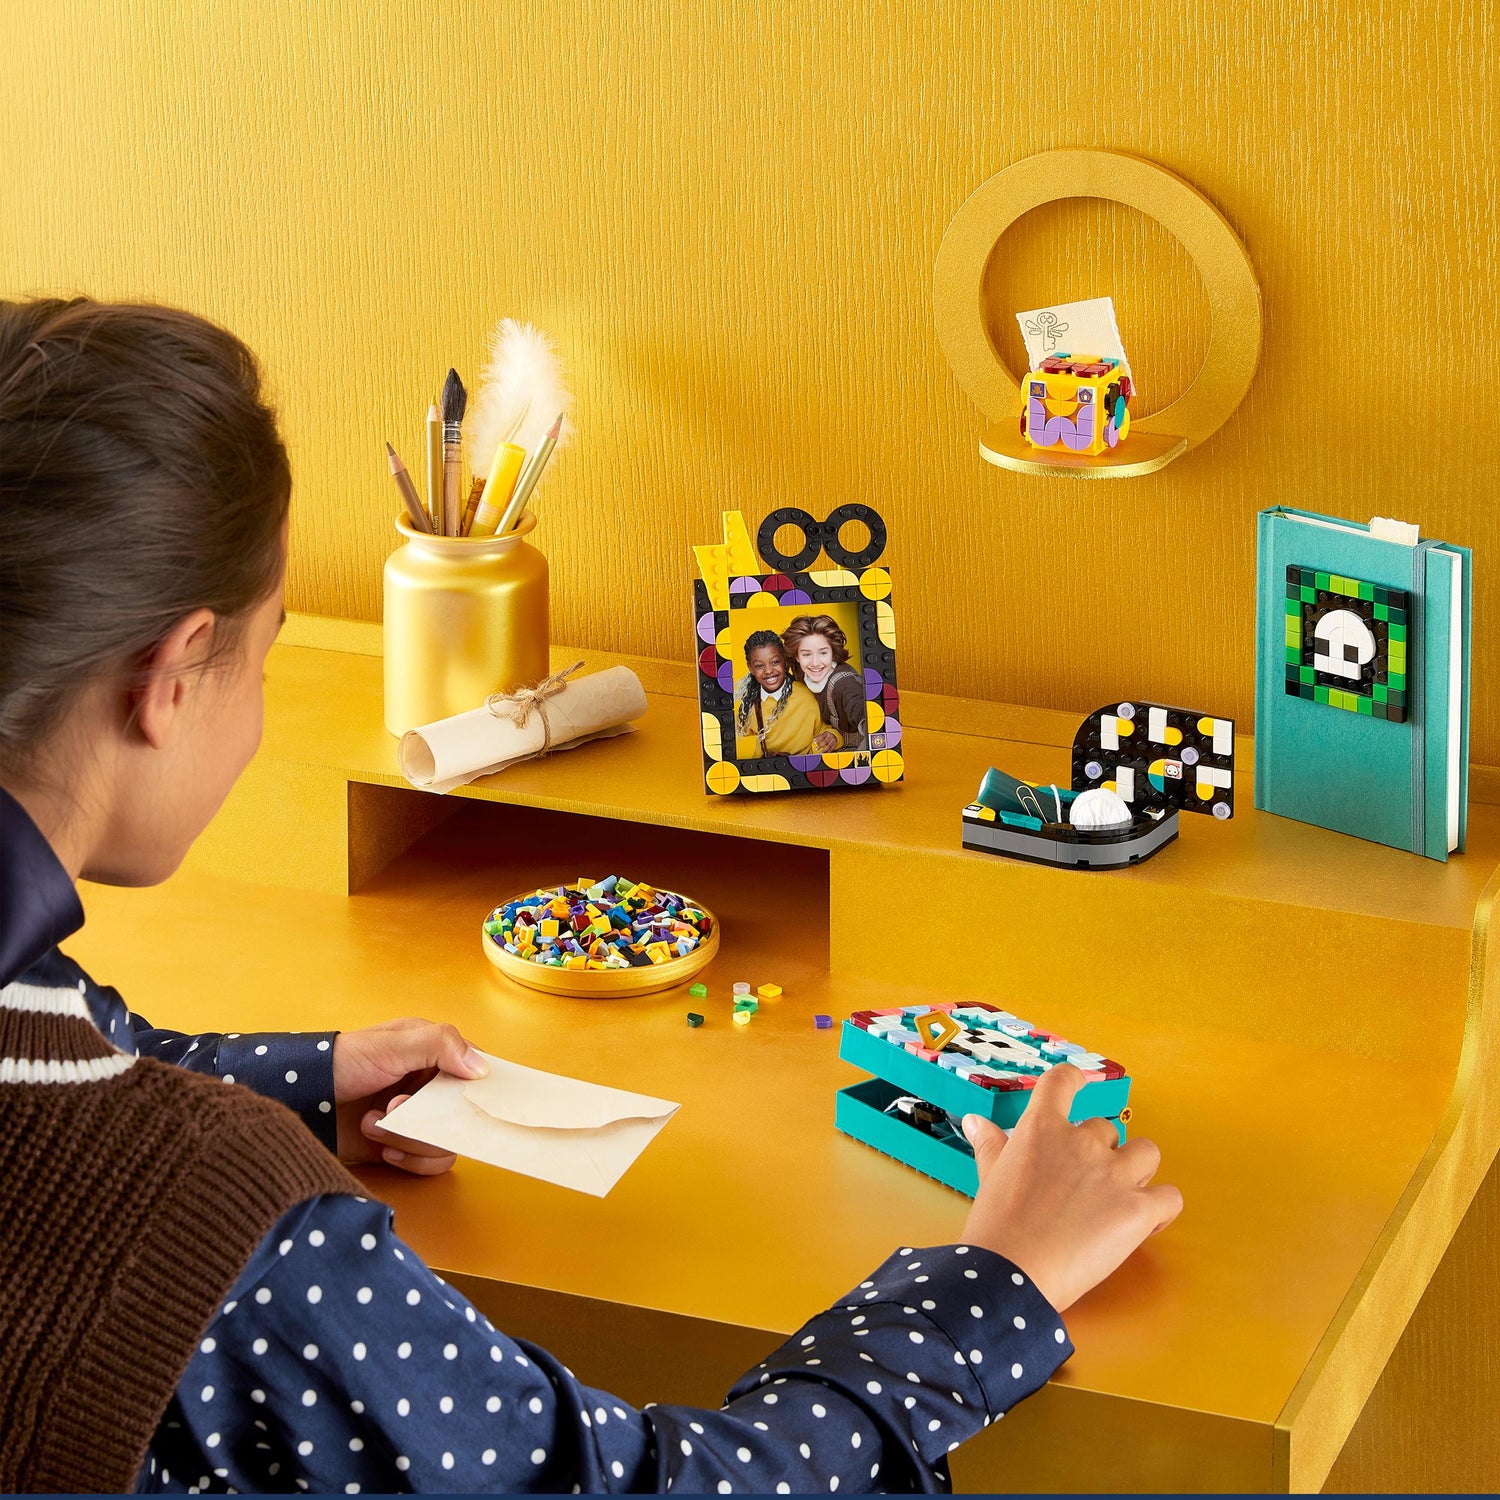 LEGO DOTS® Hogwarts Desktop Kit Kids' Craft Set